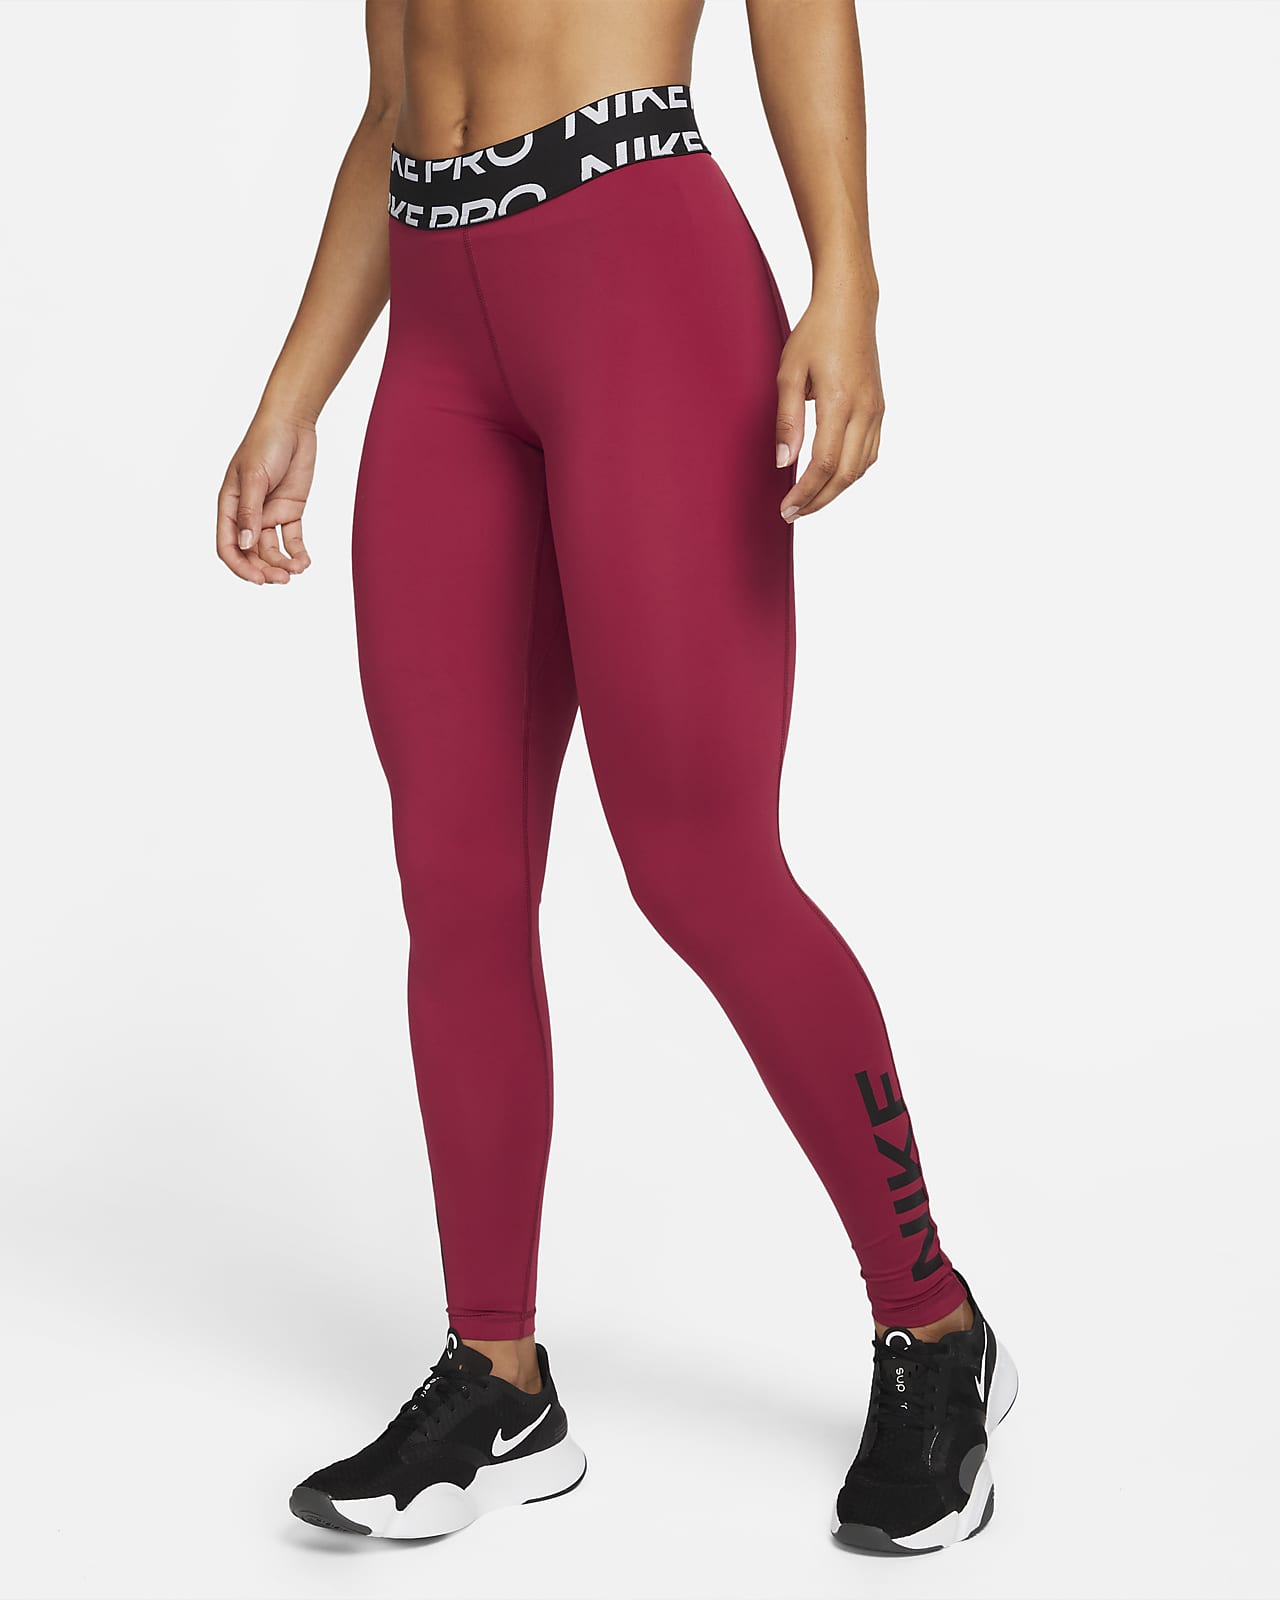 Γυναικείο κολάν μεσαίου ύψους με σχέδιο Nike Pro Dri-FIT